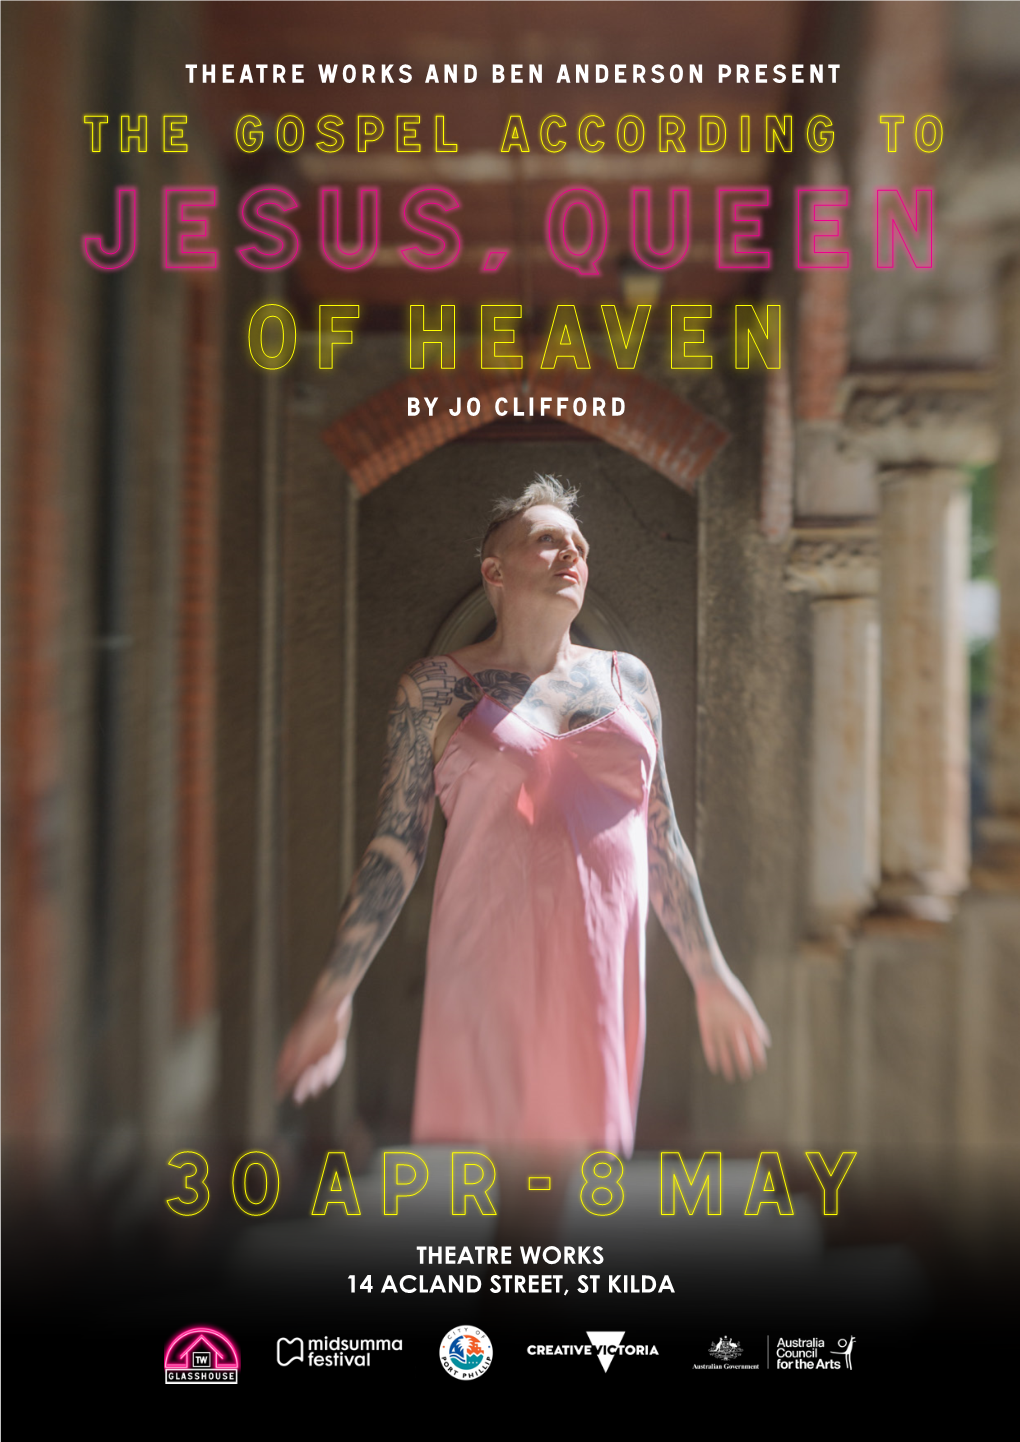 Jesus, Queen of Heaven by Jo Clifford